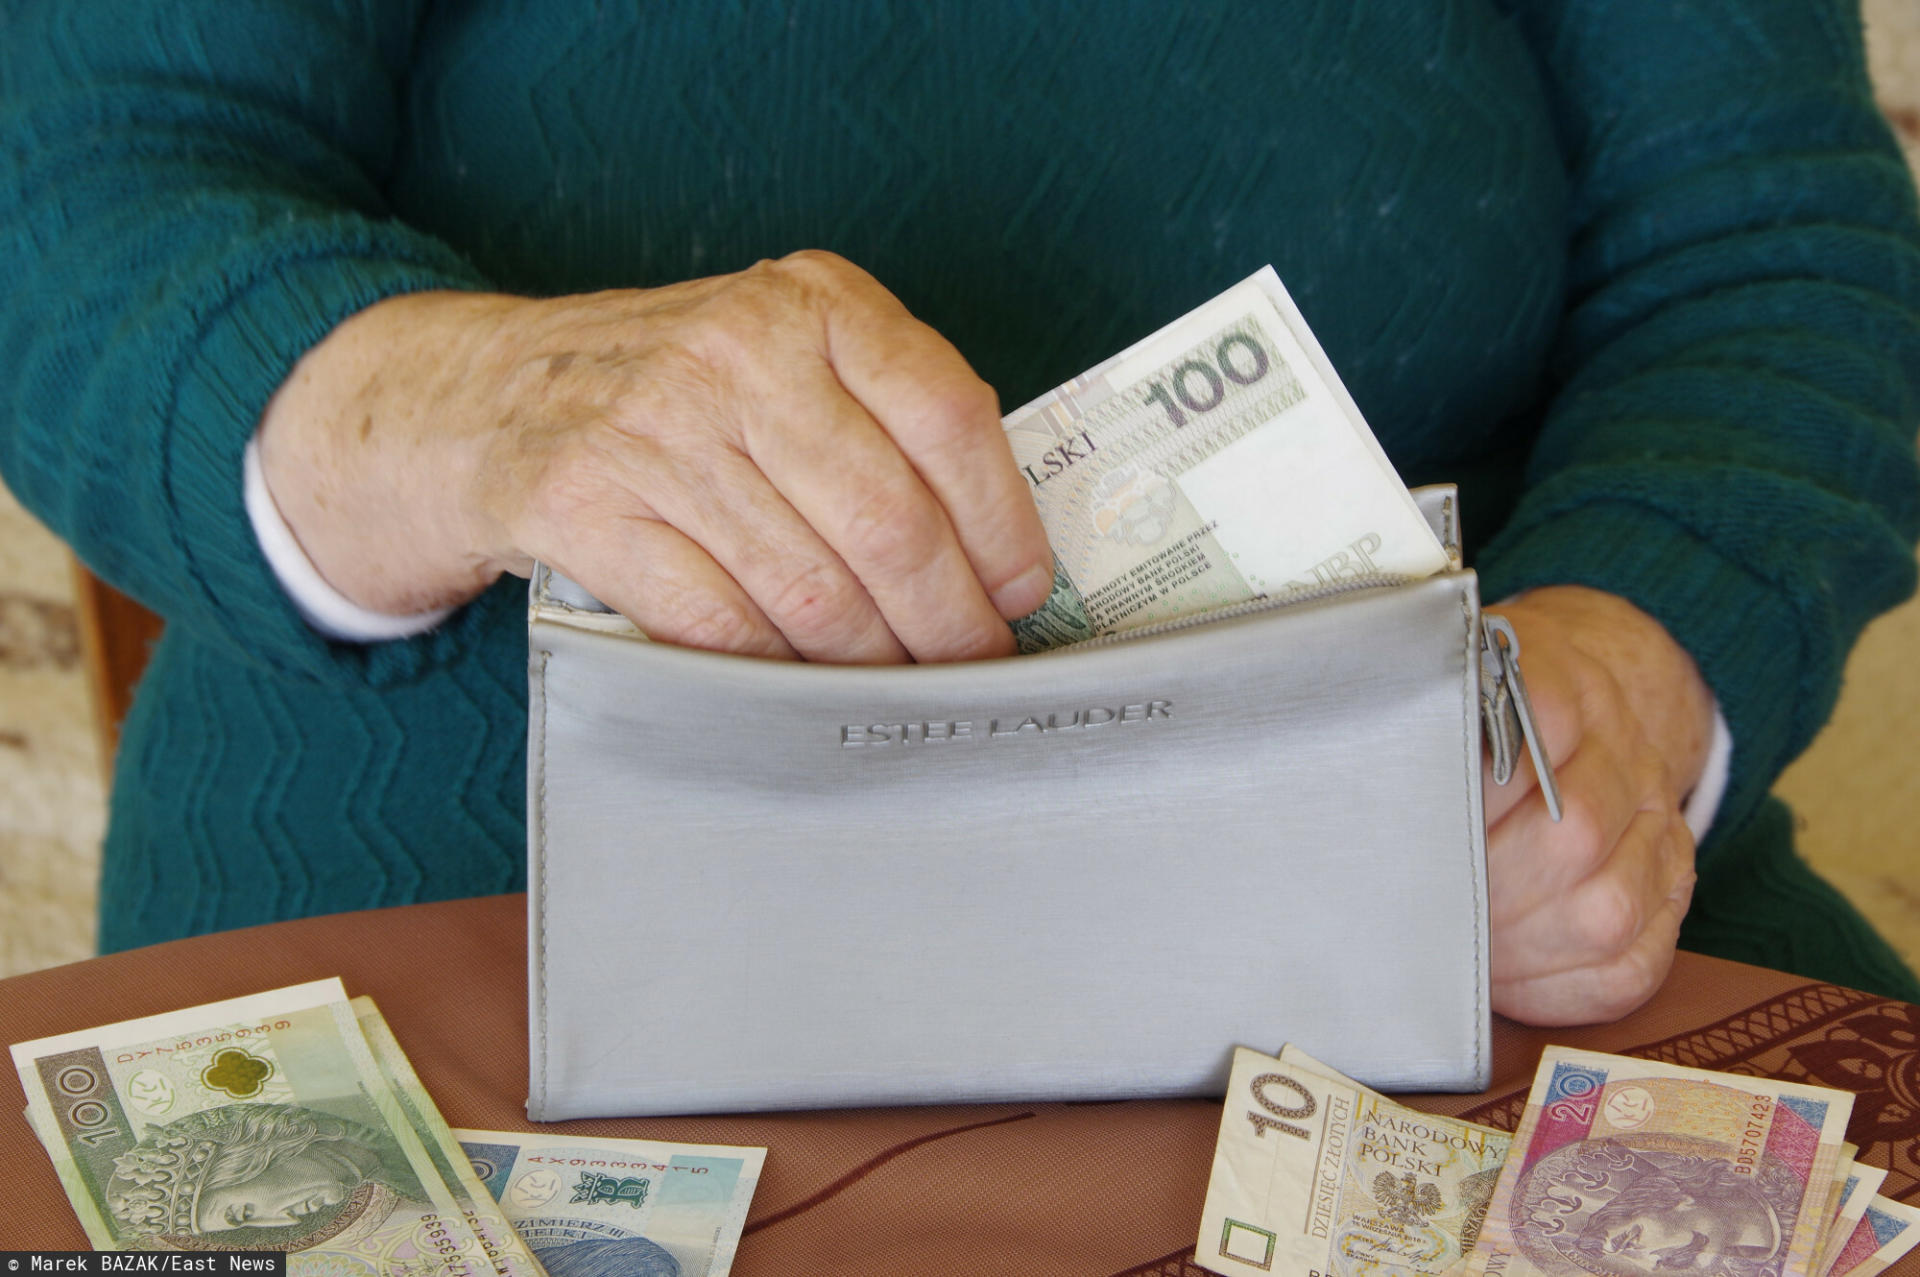 Dodatkową emeryturę pobiera coraz więcej Polaków, jednak jej podstawa prawna jest wątpliwa